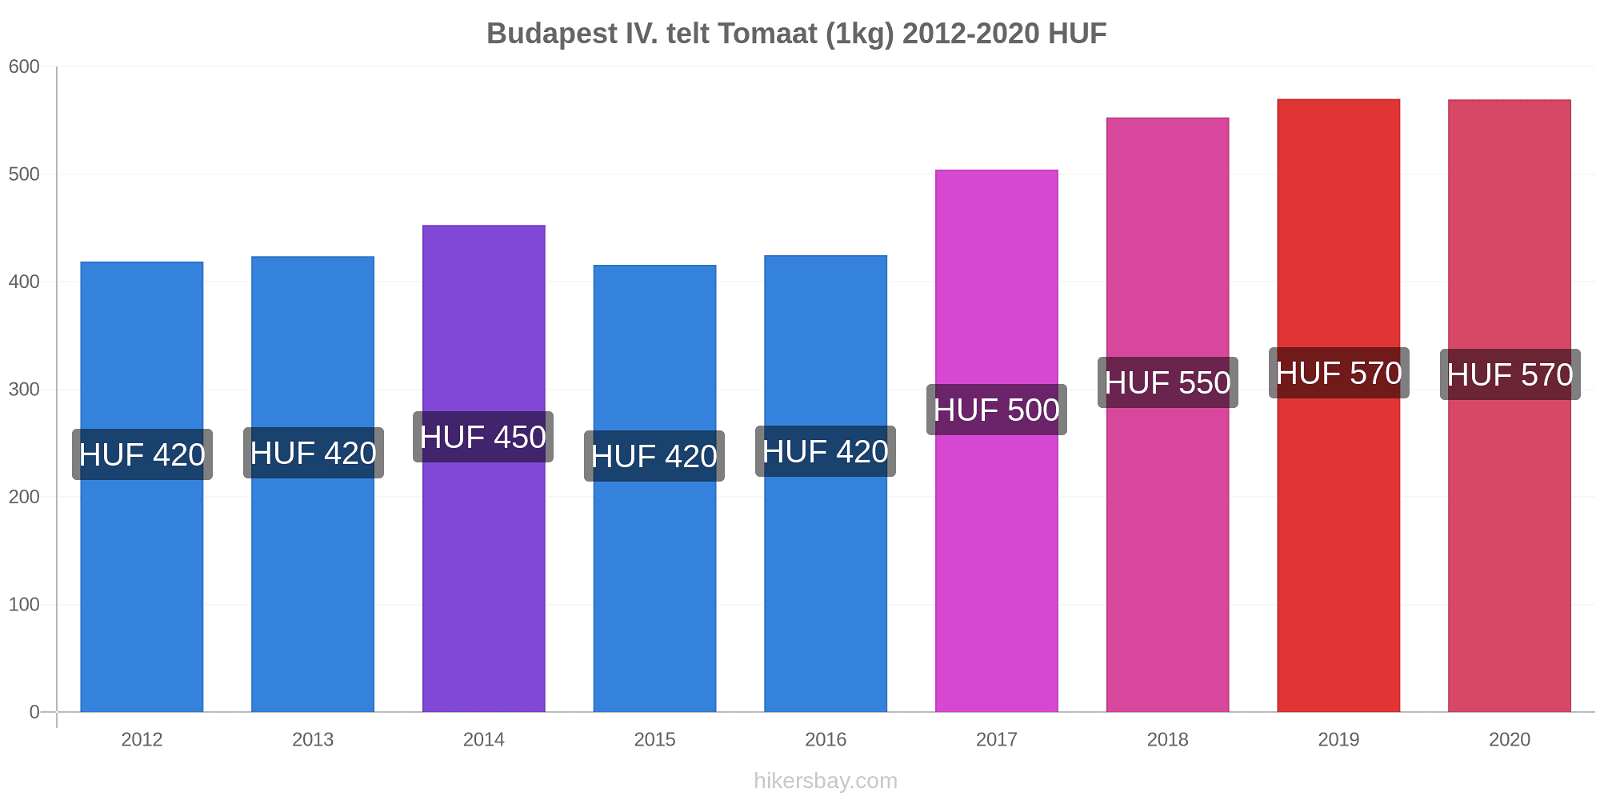 Budapest IV. telt prijswijzigingen Tomaat (1kg) hikersbay.com